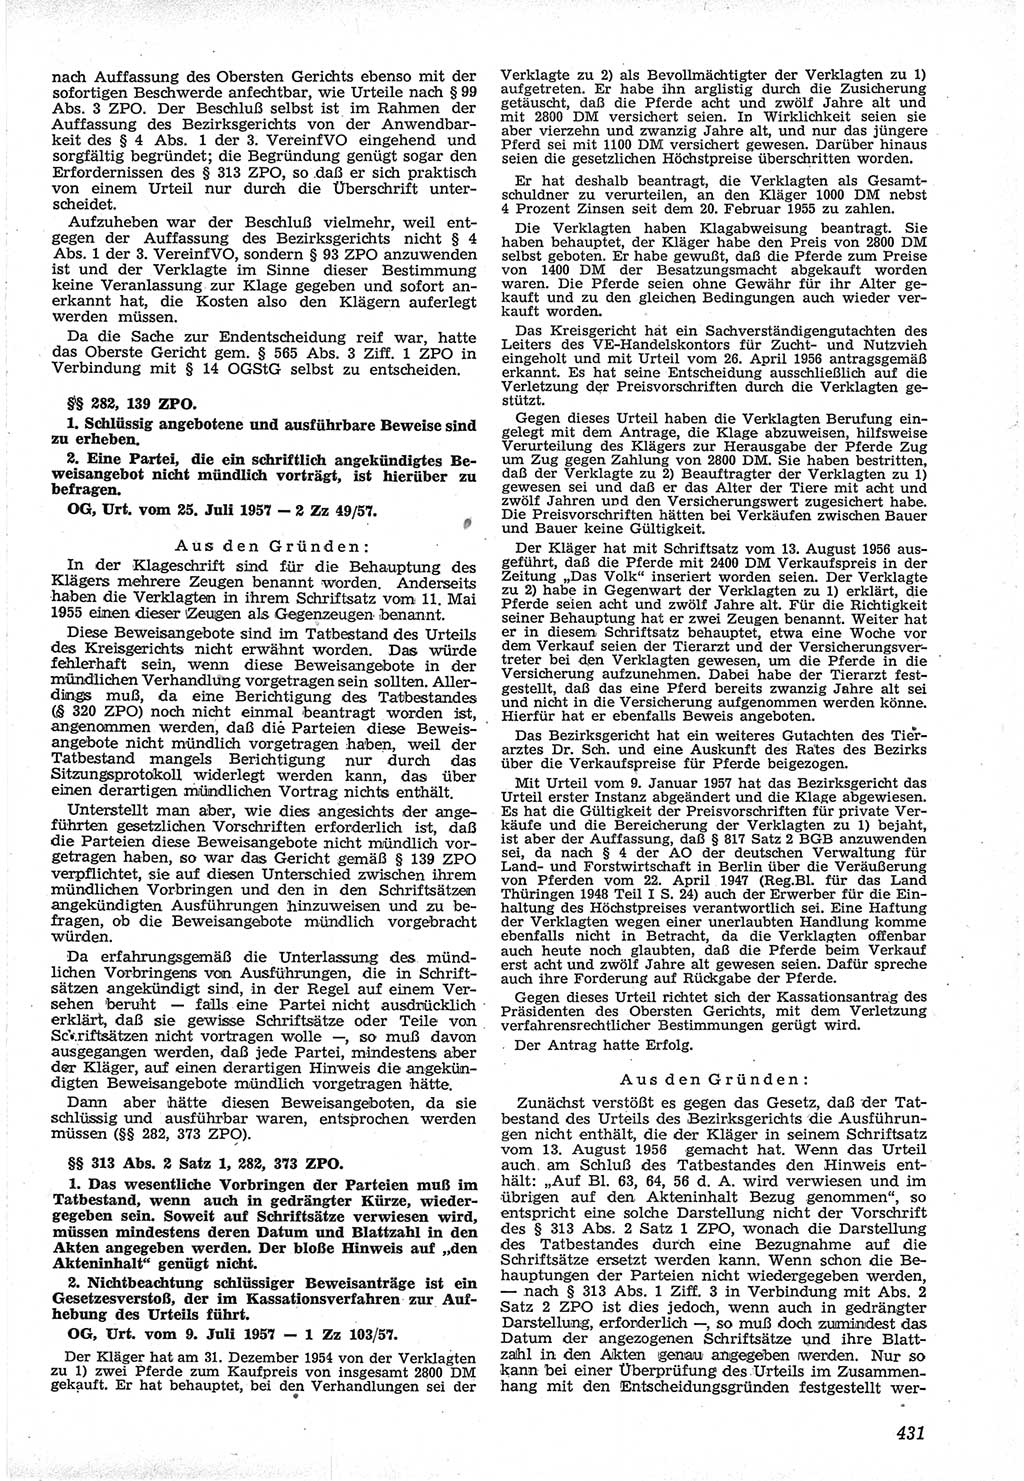 Neue Justiz (NJ), Zeitschrift für Recht und Rechtswissenschaft [Deutsche Demokratische Republik (DDR)], 12. Jahrgang 1958, Seite 431 (NJ DDR 1958, S. 431)